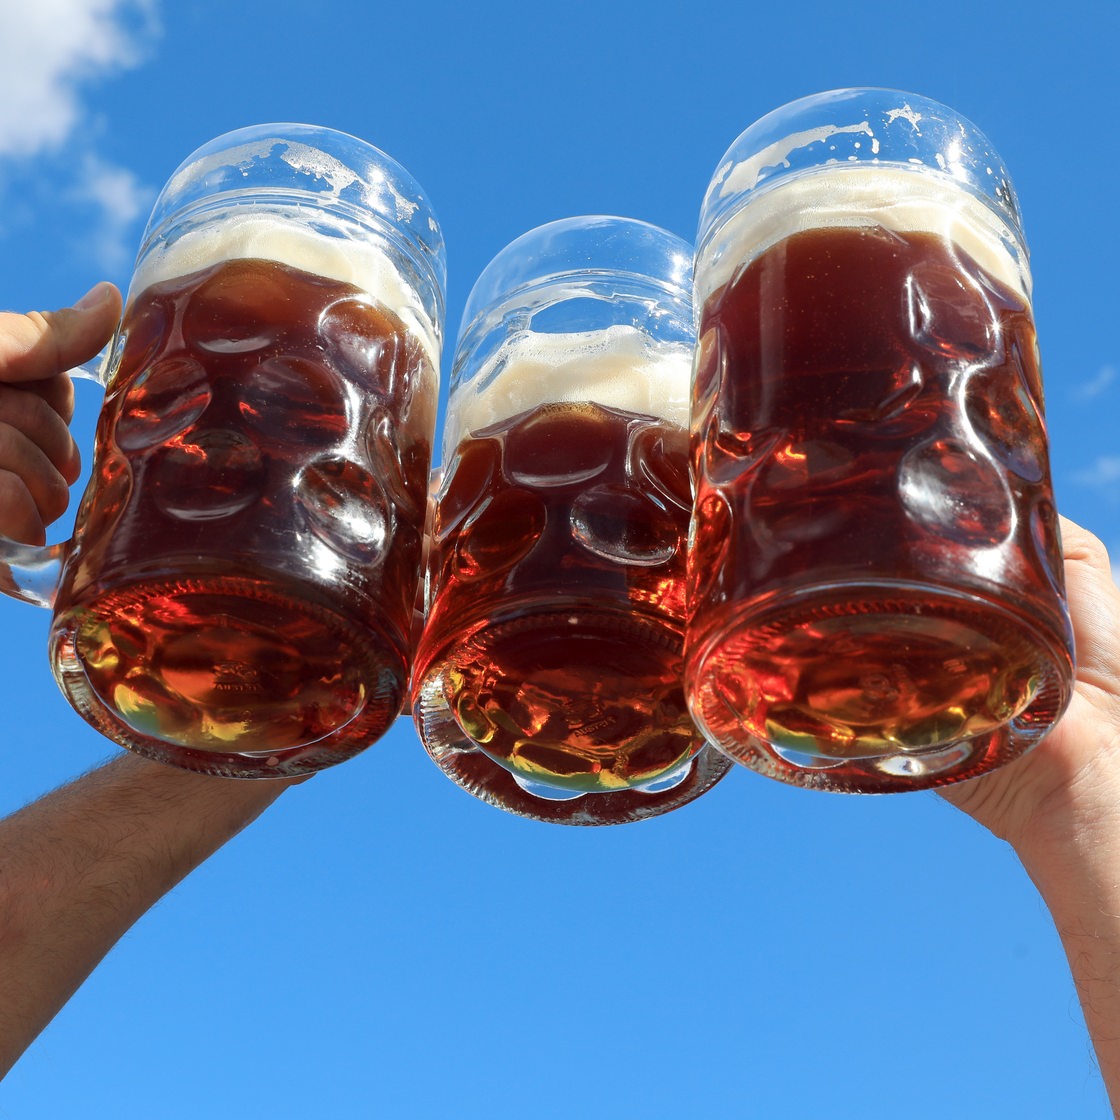 Drei Hände stoßen gegen den blauen Himmel mit gläsernen Bierkrügen an.